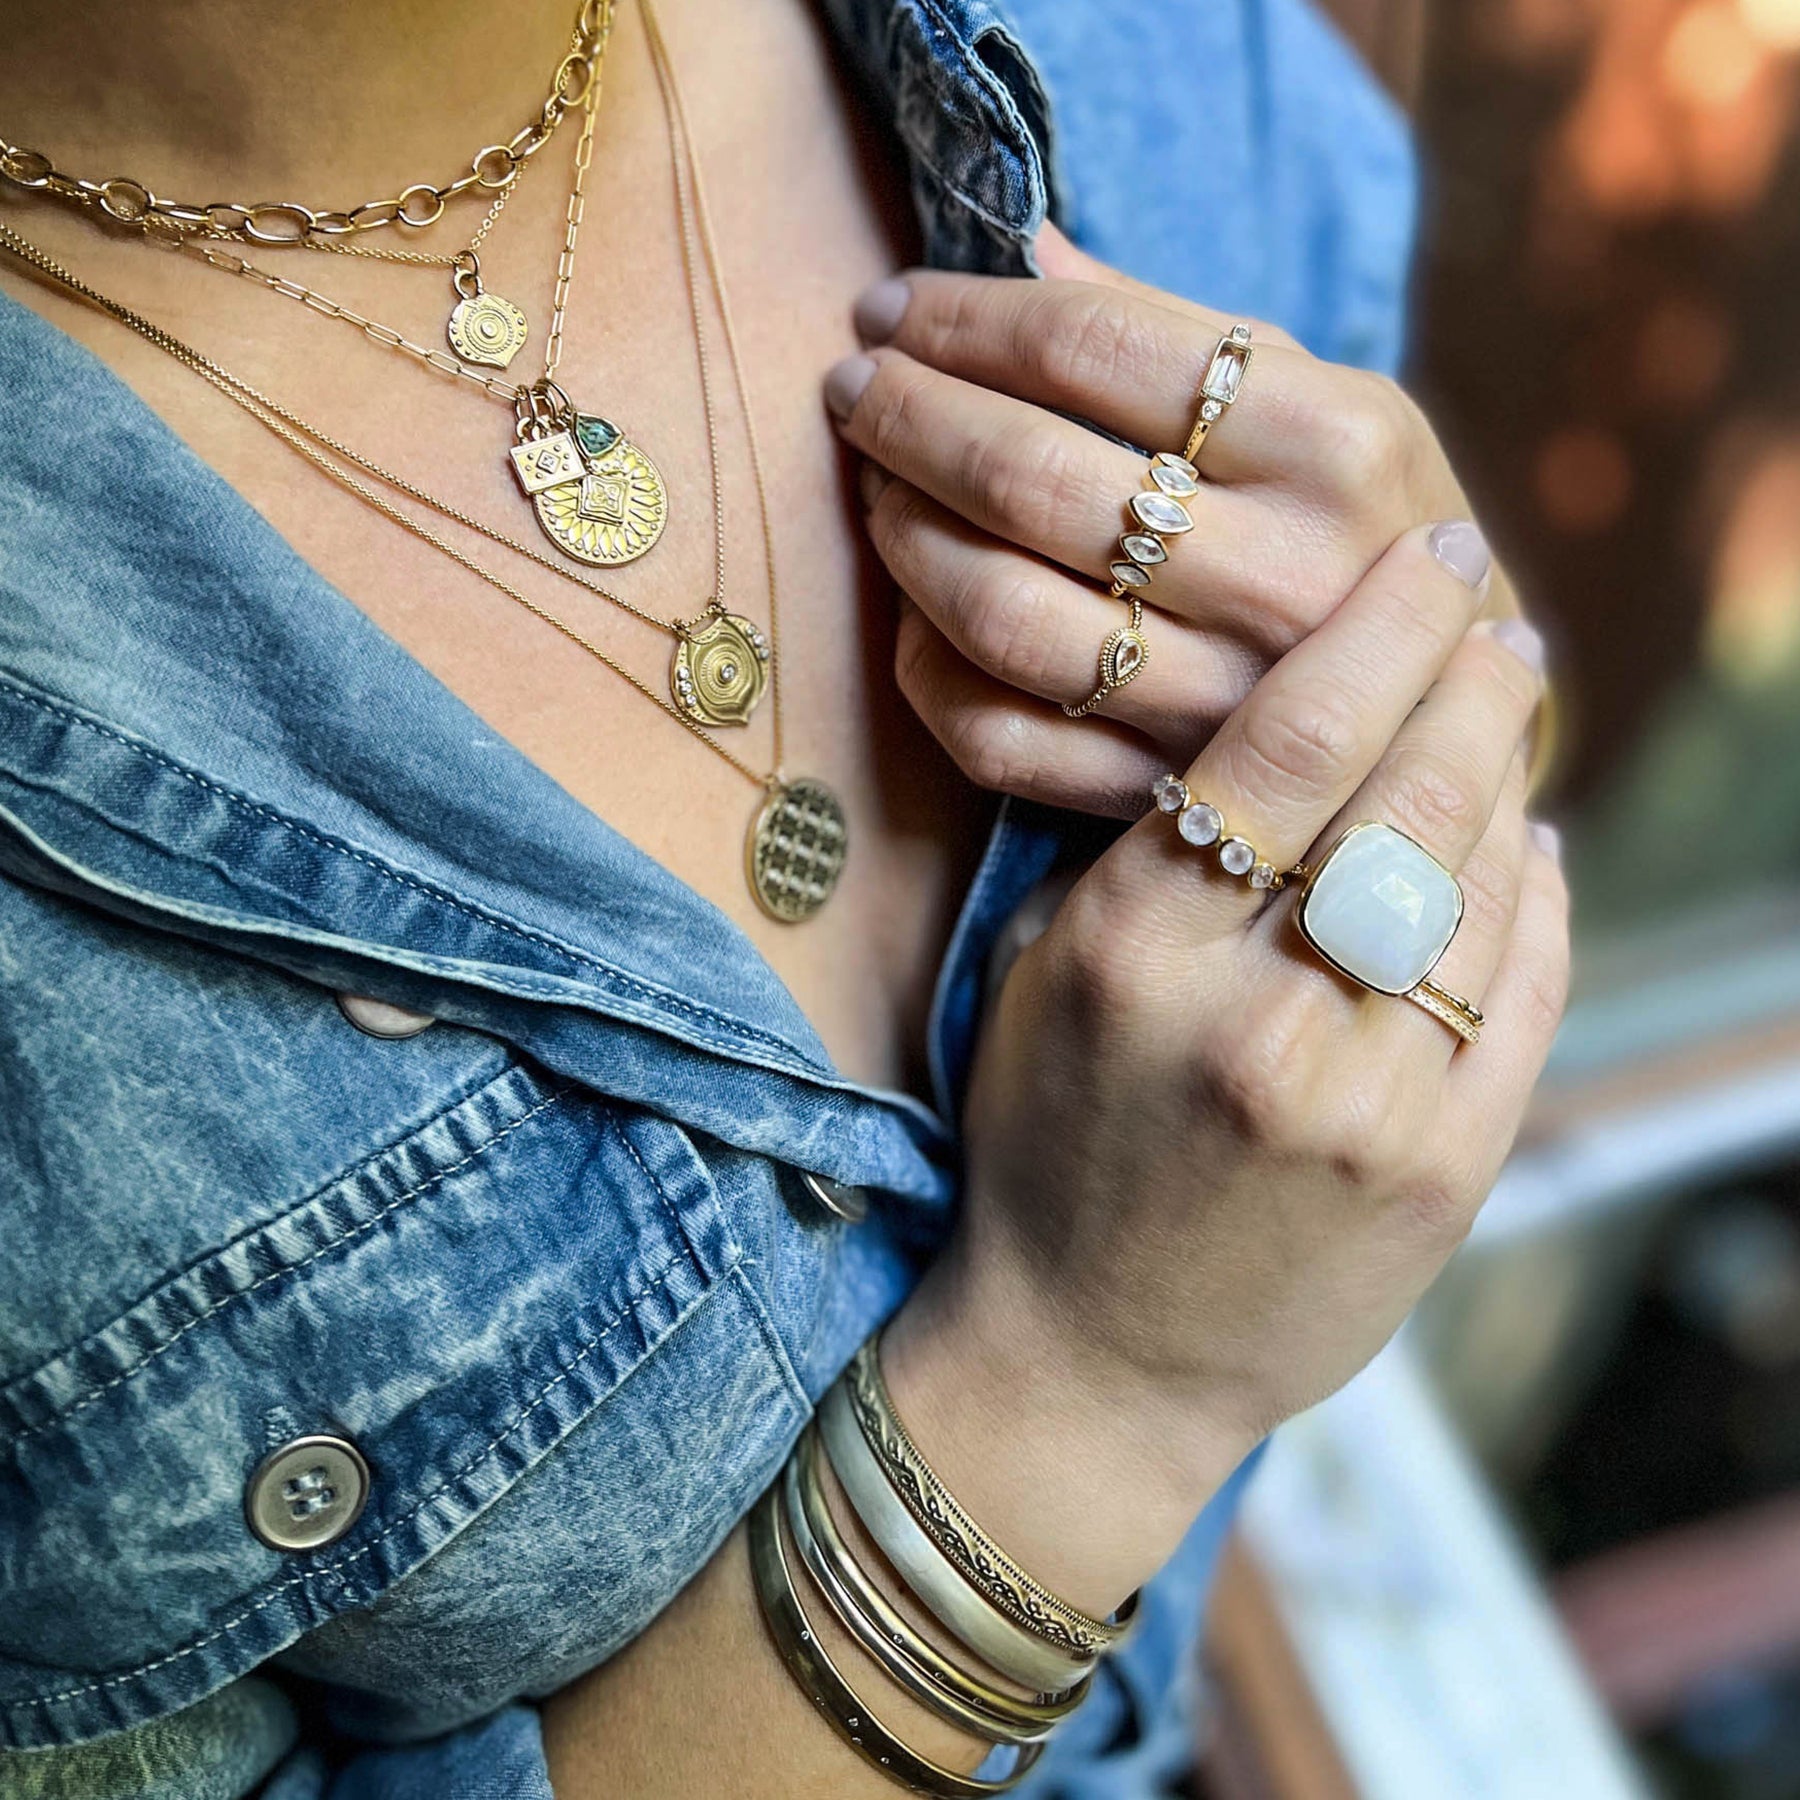 Fall Fashion & The Lulu Jewelry To Match